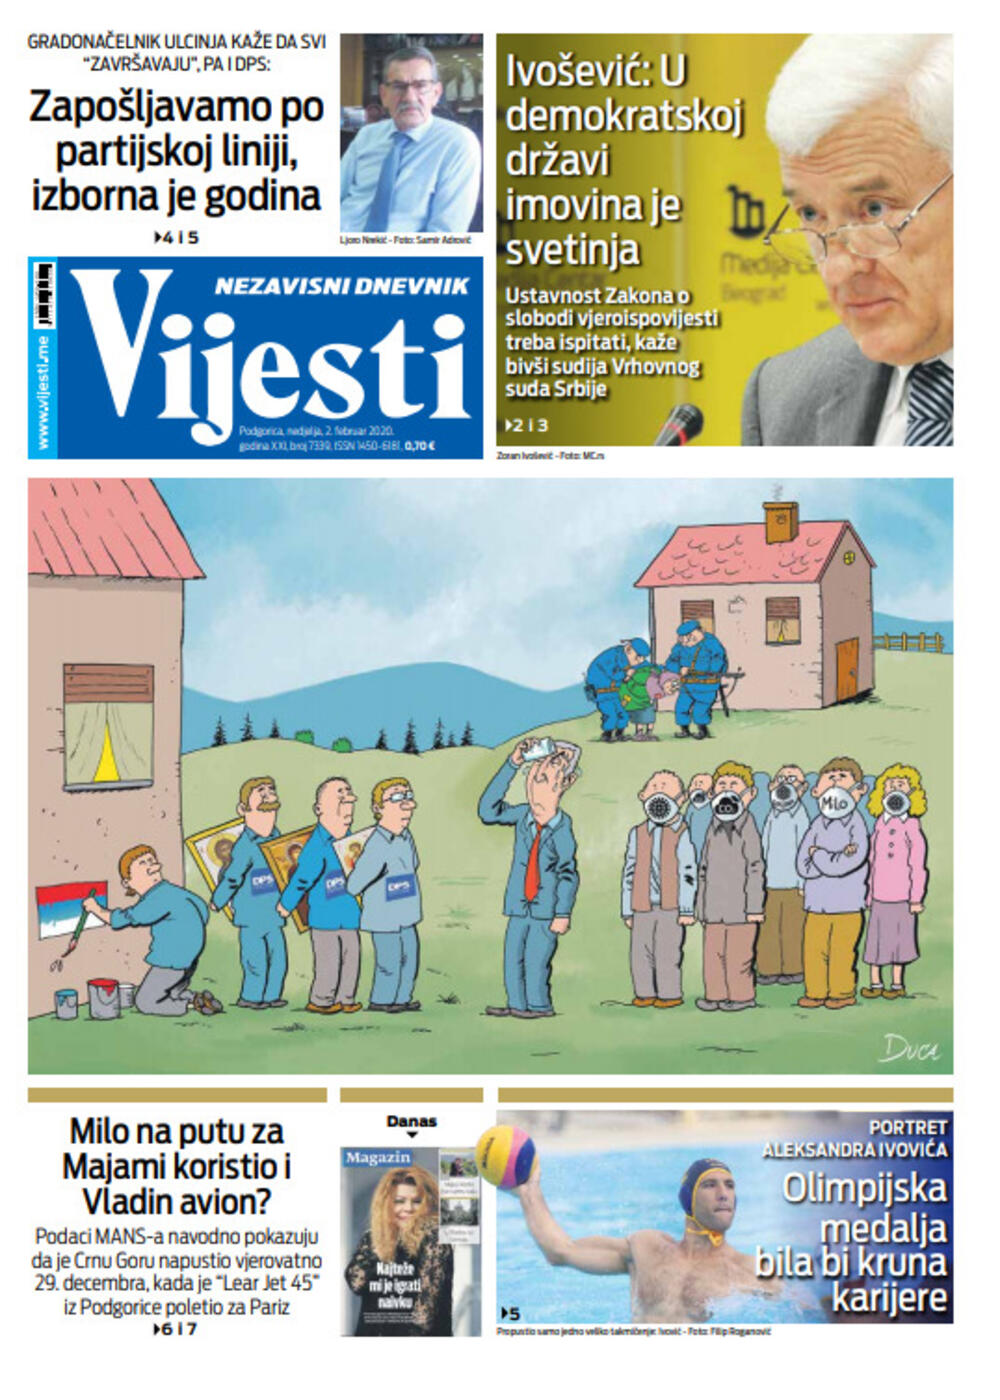 Naslovna strana "Vijesti" za drugi februar 2020. godine, Foto: "Vijesti"